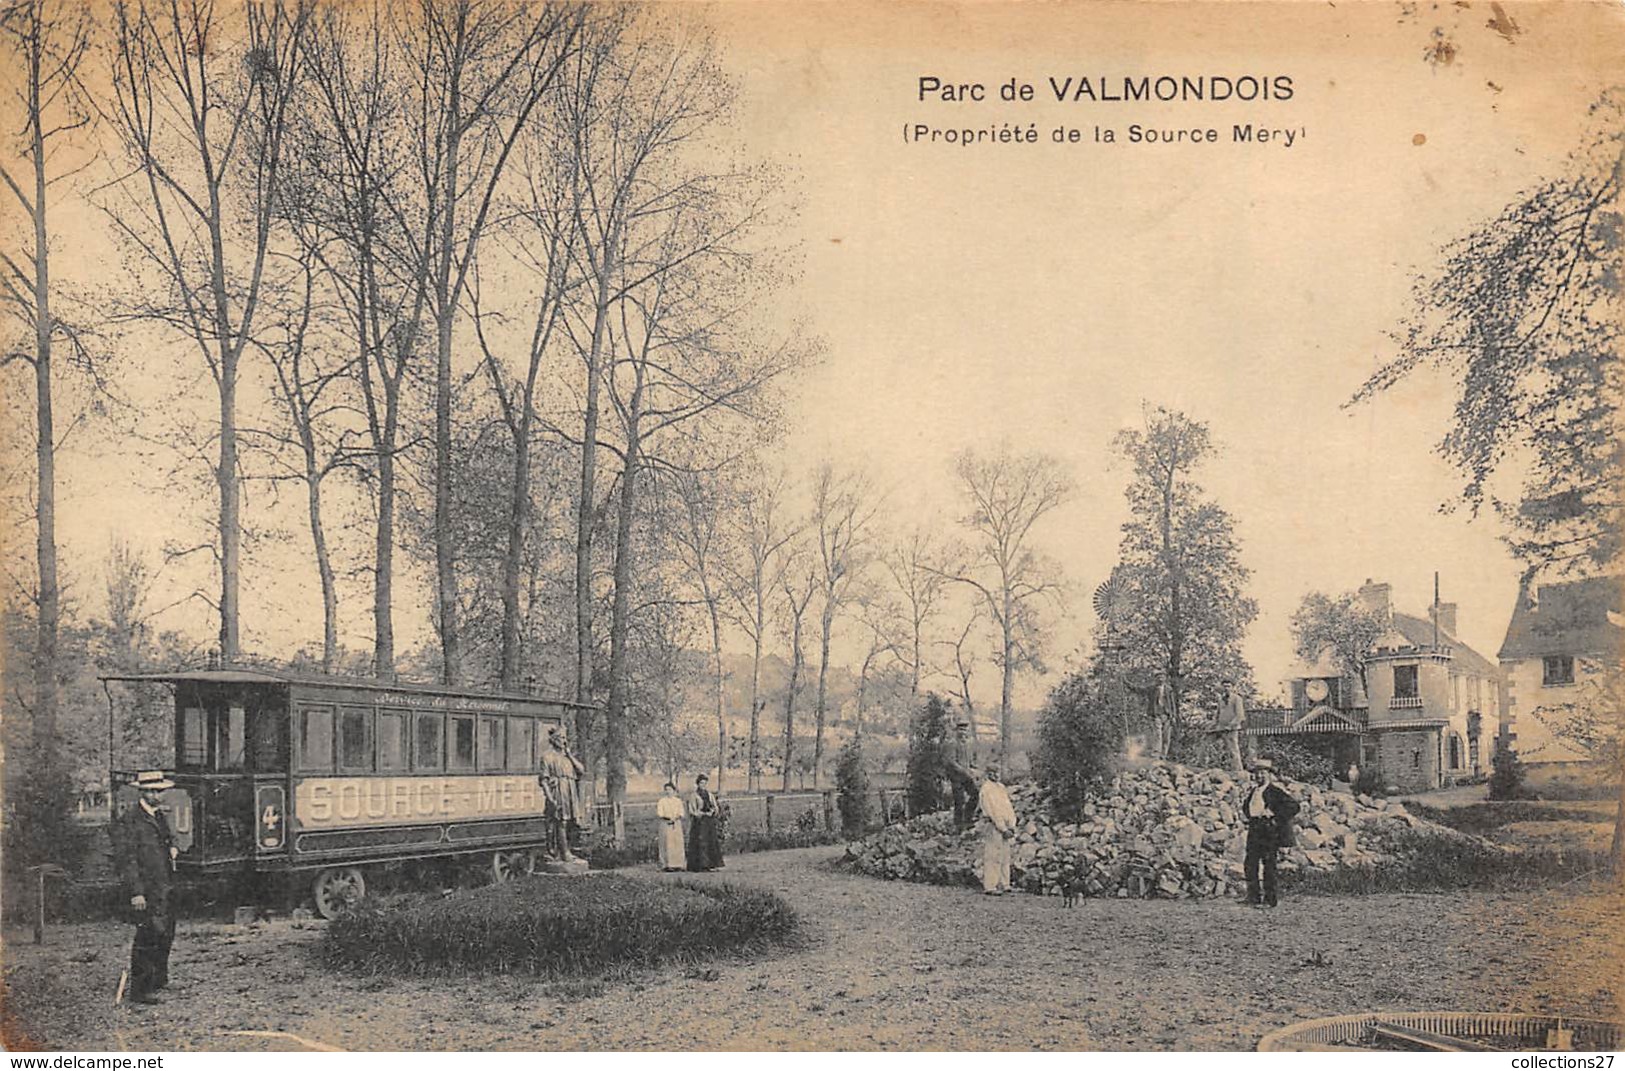 95-VALMONDOIS- PARC DE VALMONDOIS- PROPRIETE DE LA SOURCE MERY - Valmondois